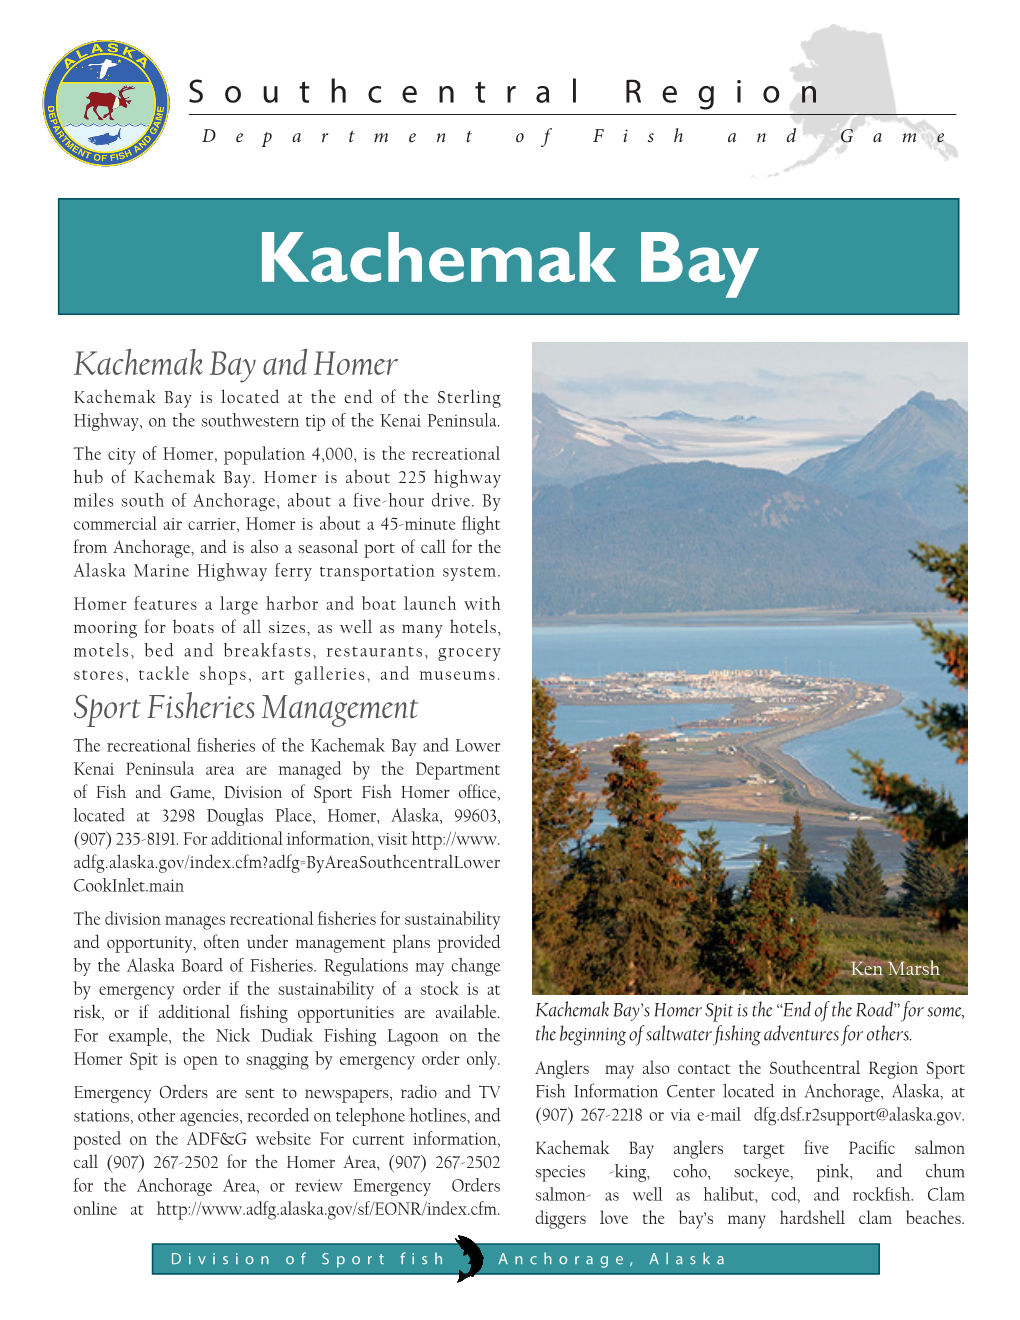 Kachemak Bay